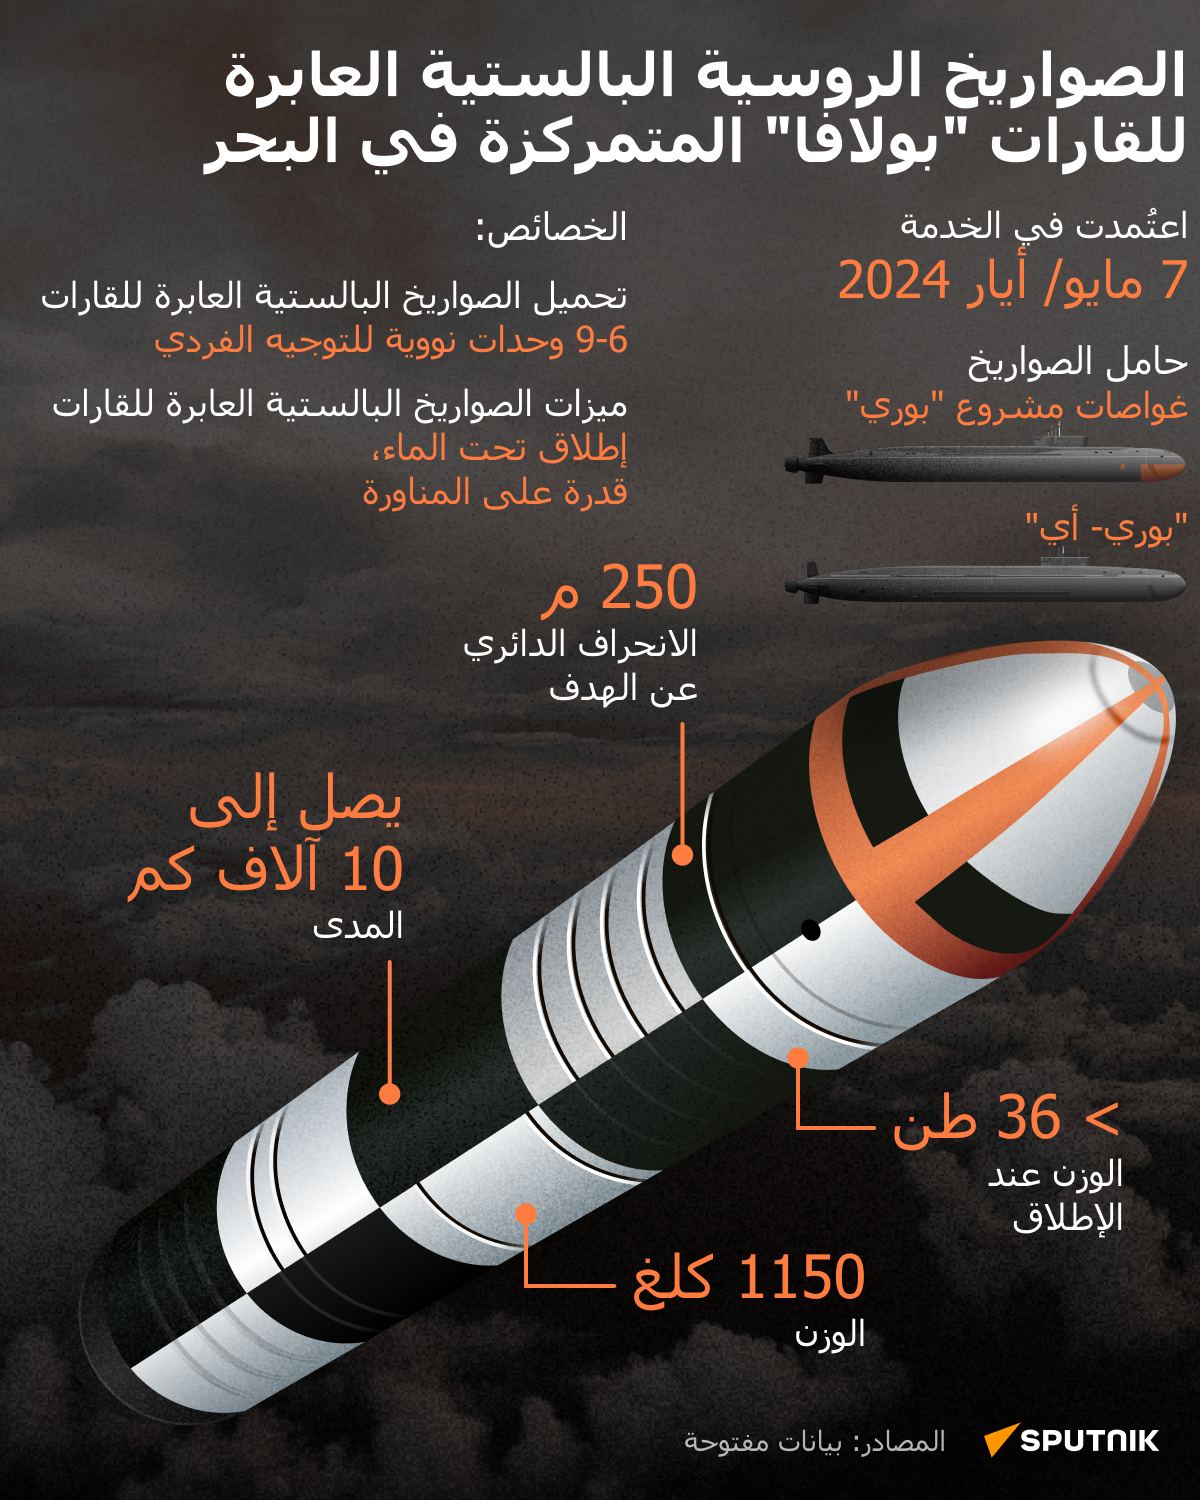 الصواريخ الروسية البالستية العابرة للقارات بولافا المتمركزة في البحر - سبوتنيك عربي